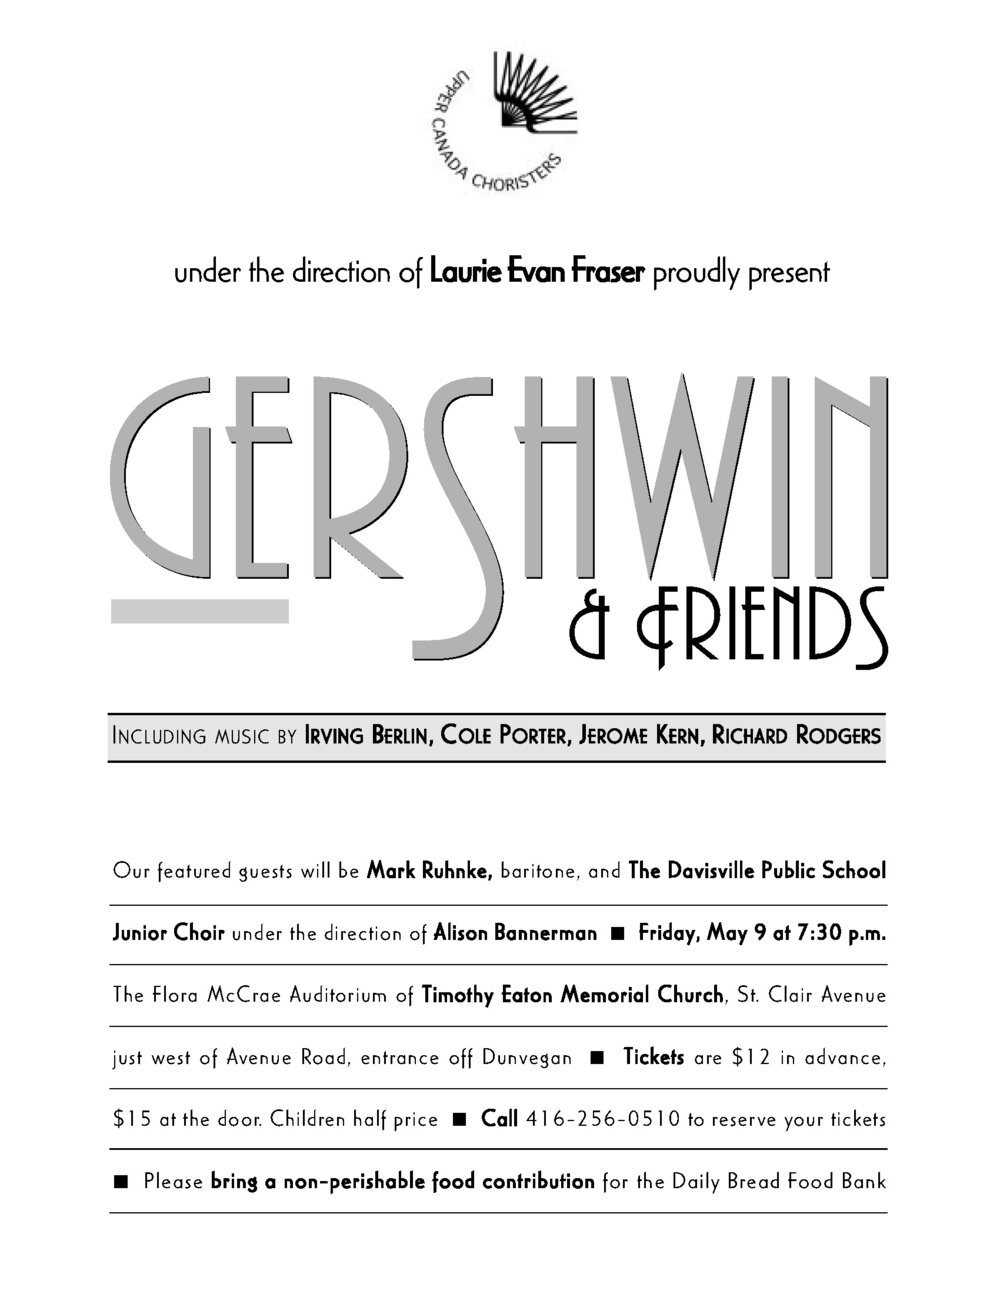 Gershwin.jpg